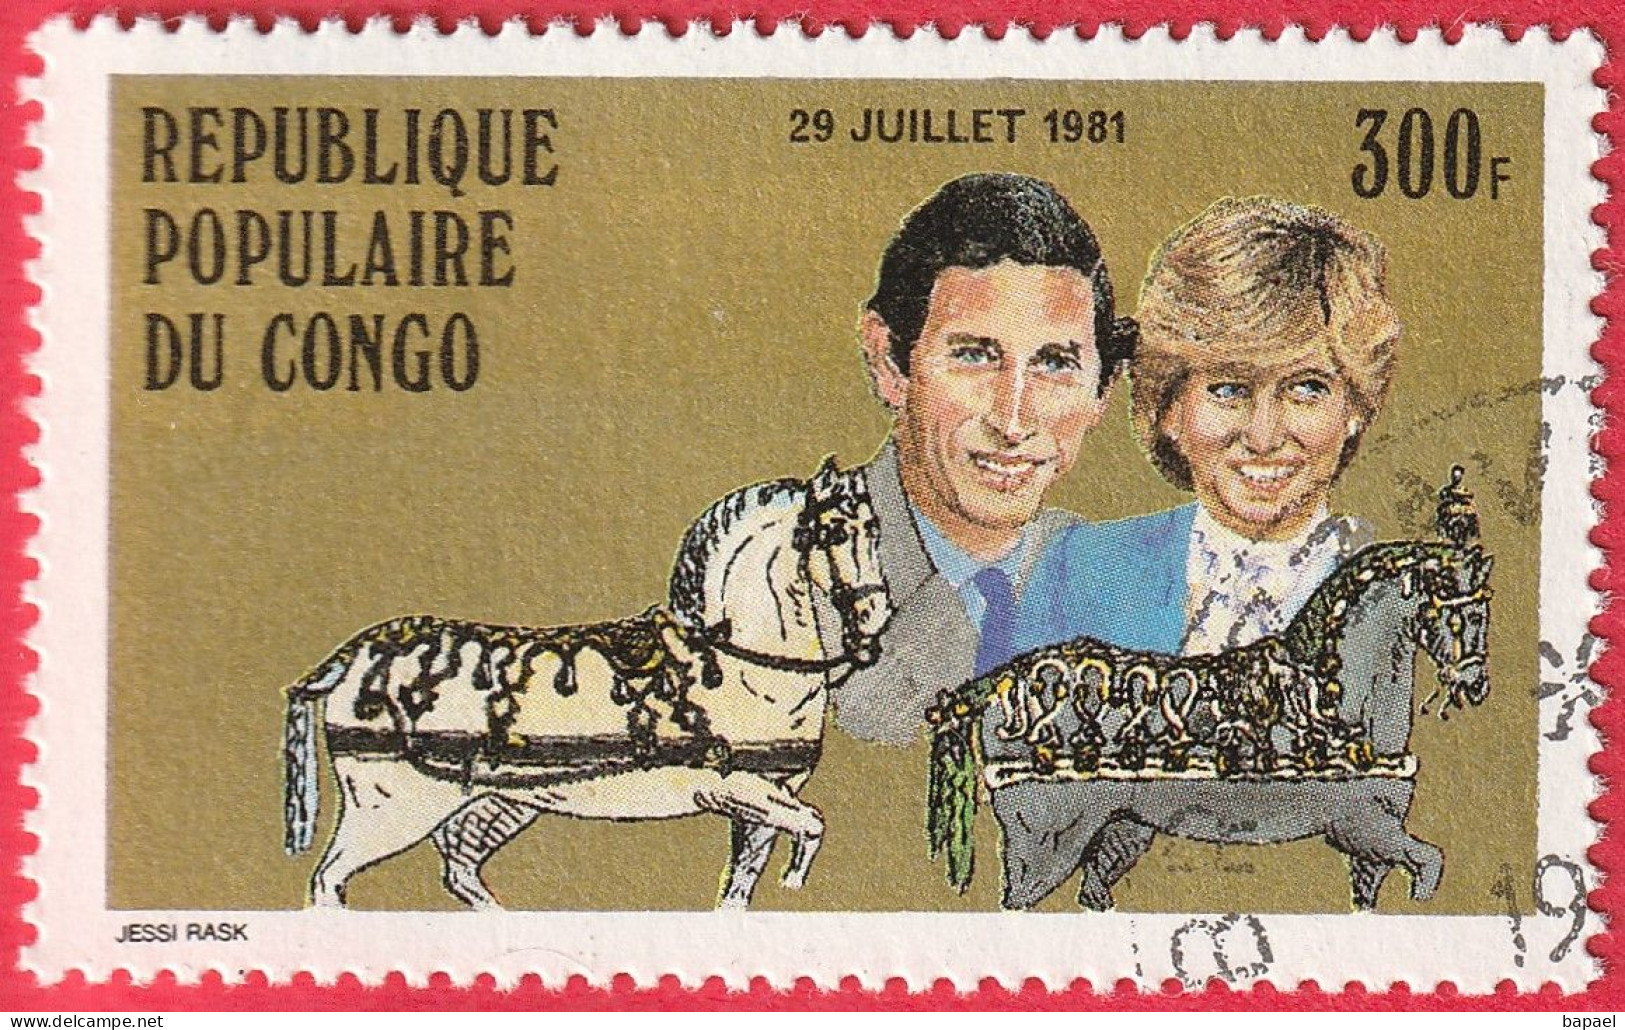 N° Yvert & Tellier 639 - Rép. Du Congo (1981) (Oblitéré) - Mariage Royal Du Prince Charles Et De Lady Diana Spencer - Usados